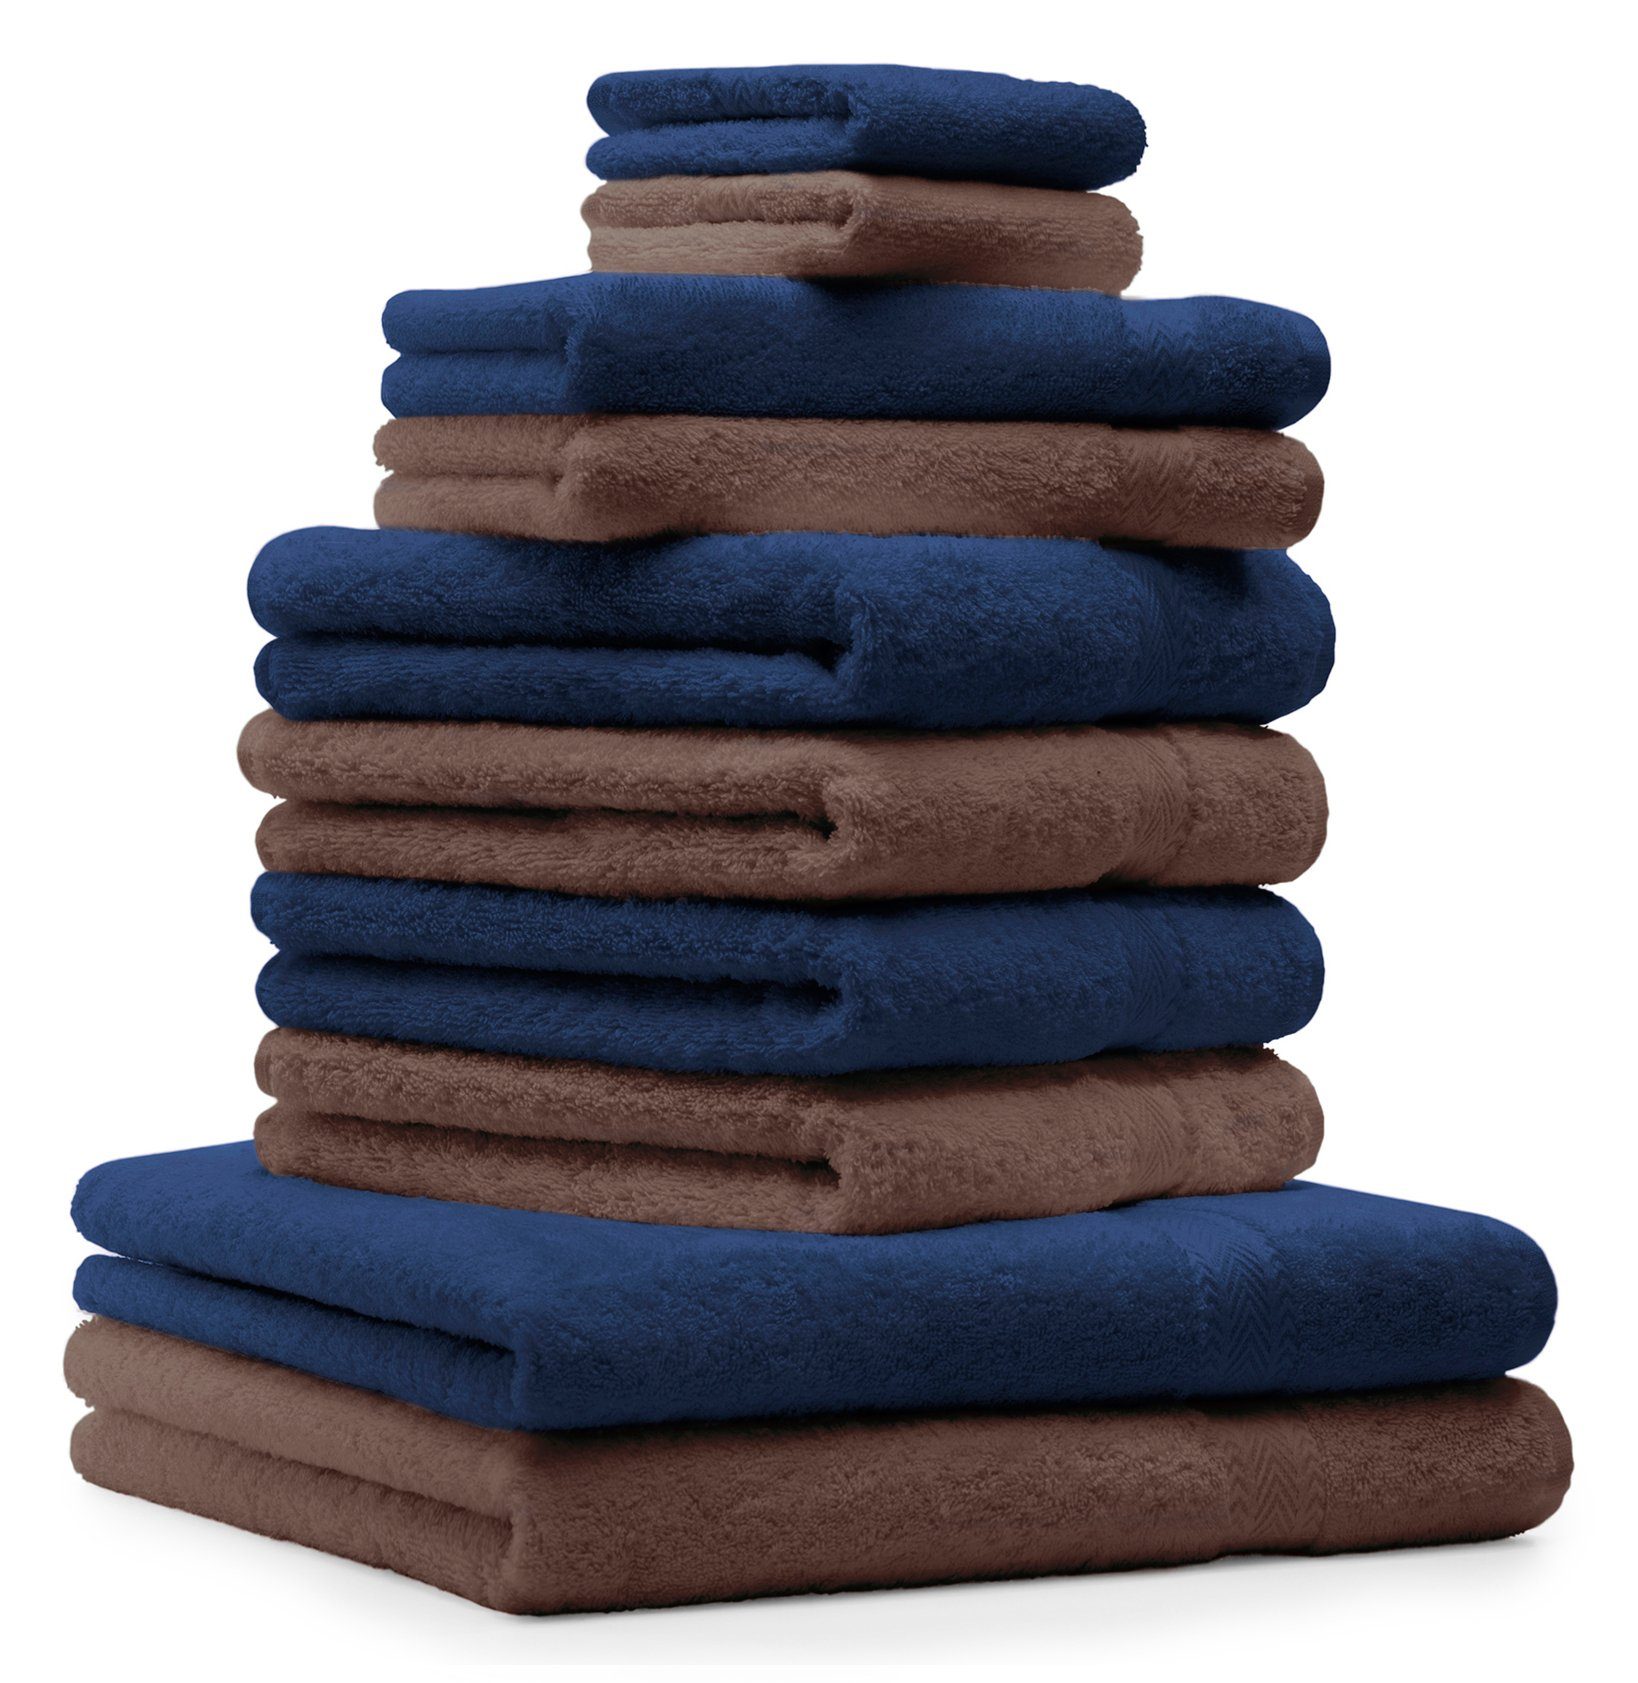 Betz Handtuch Set 10-TLG. Handtücher-Set Classic Farbe dunkelblau und nussbraun, 100% Baumwolle